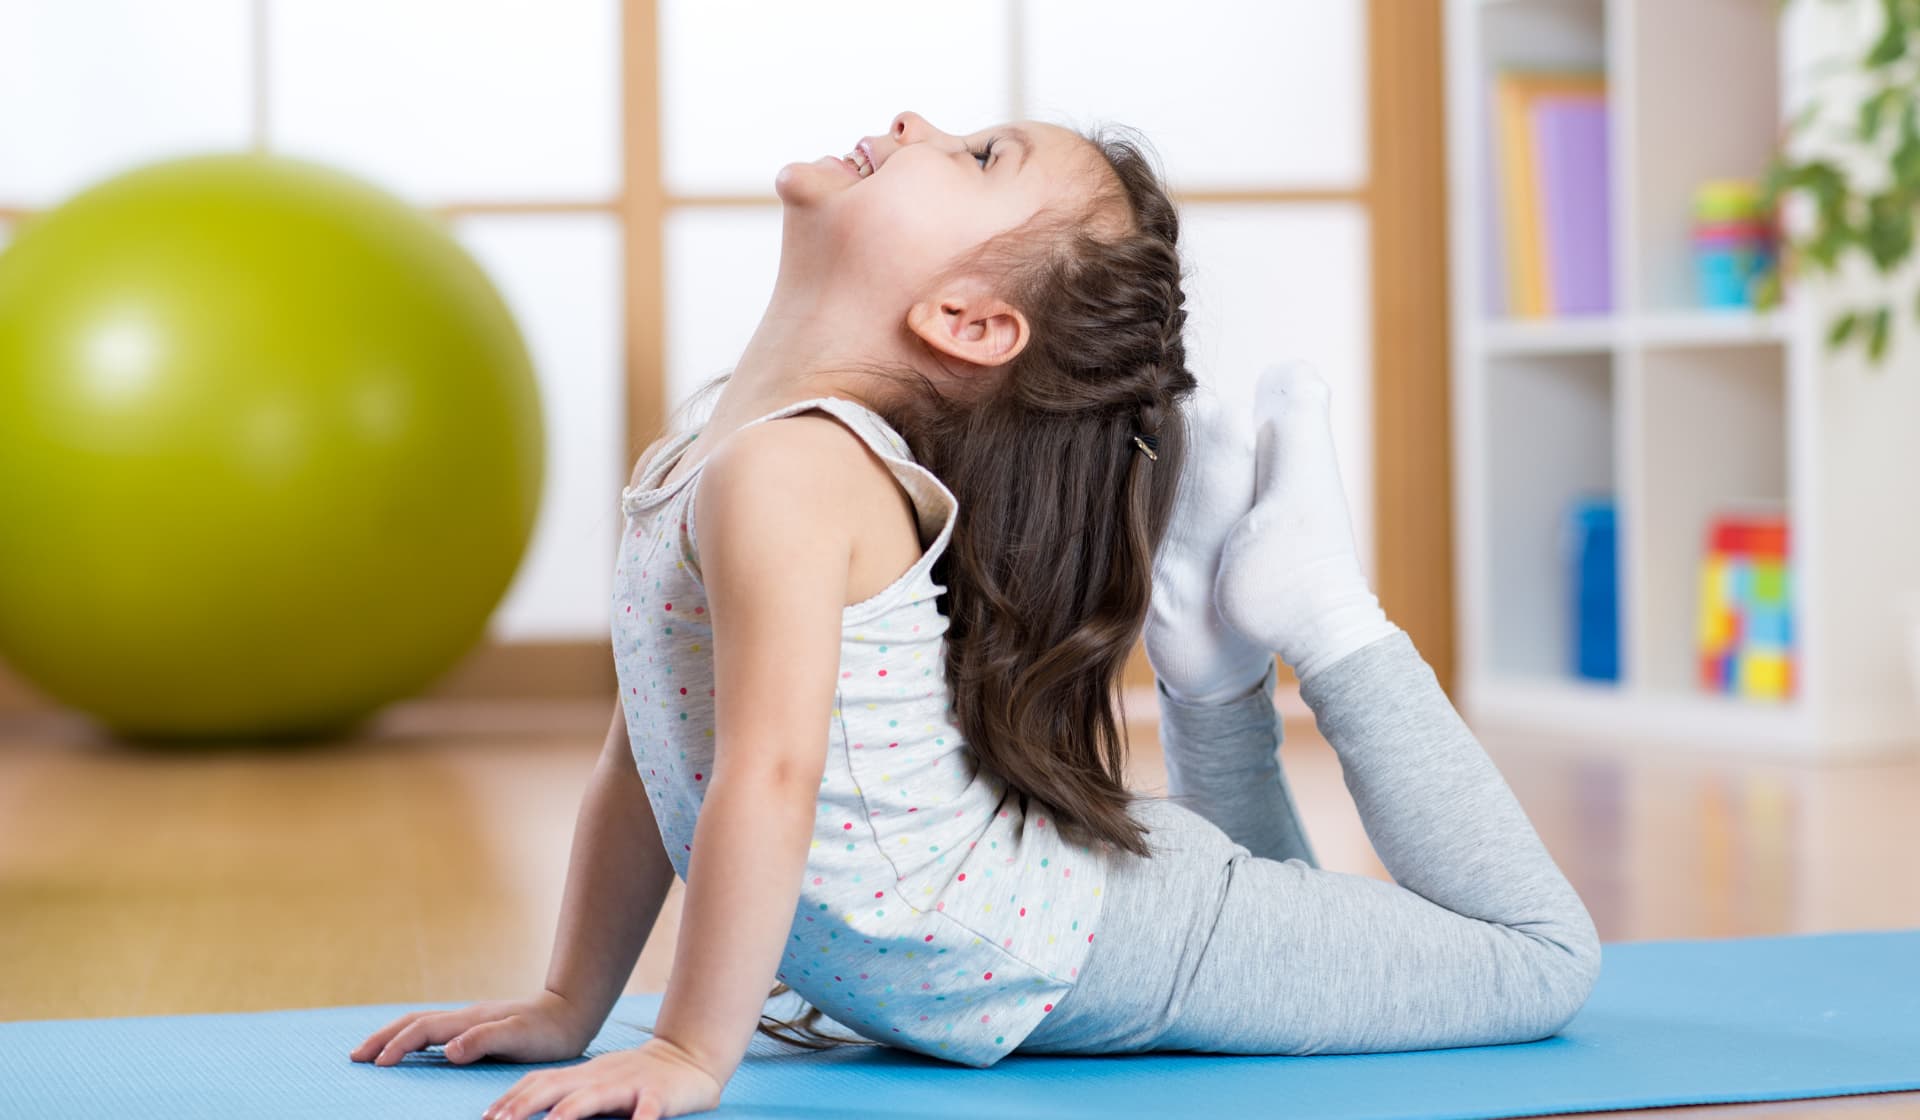 Toddler Leggings – Beyond Yoga